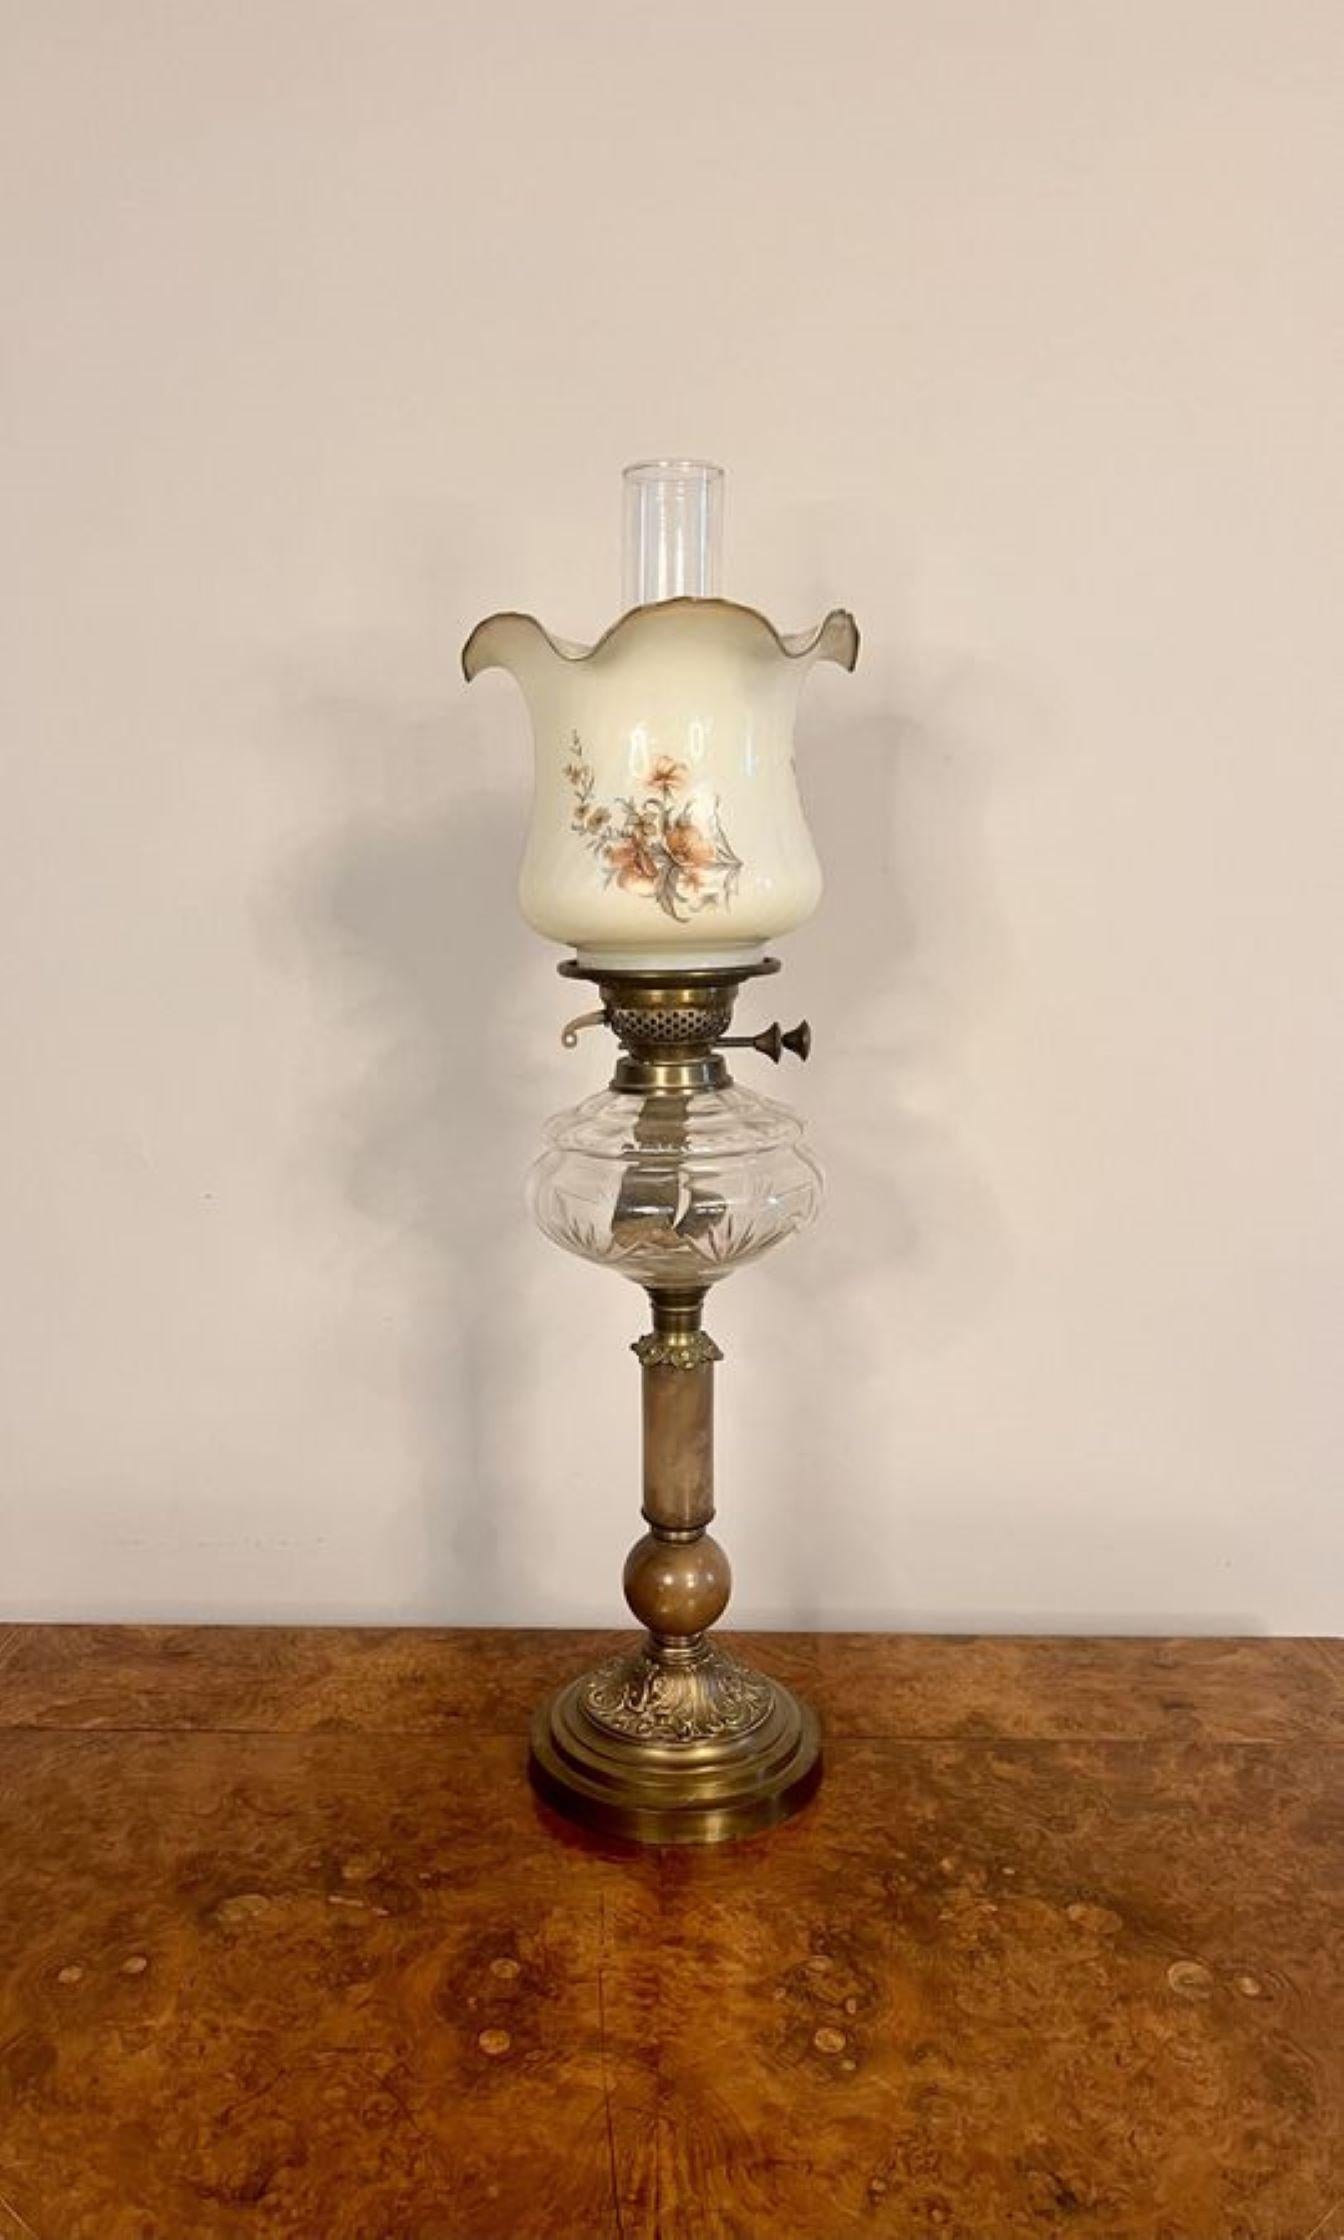 Lampe à huile victorienne de qualité exceptionnelle, avec une cheminée en verre d'origine et un abat-jour floral ondulé, un brûleur en laiton d'origine, un réservoir en verre transparent soutenu par une colonne corinthienne en onyx avec des